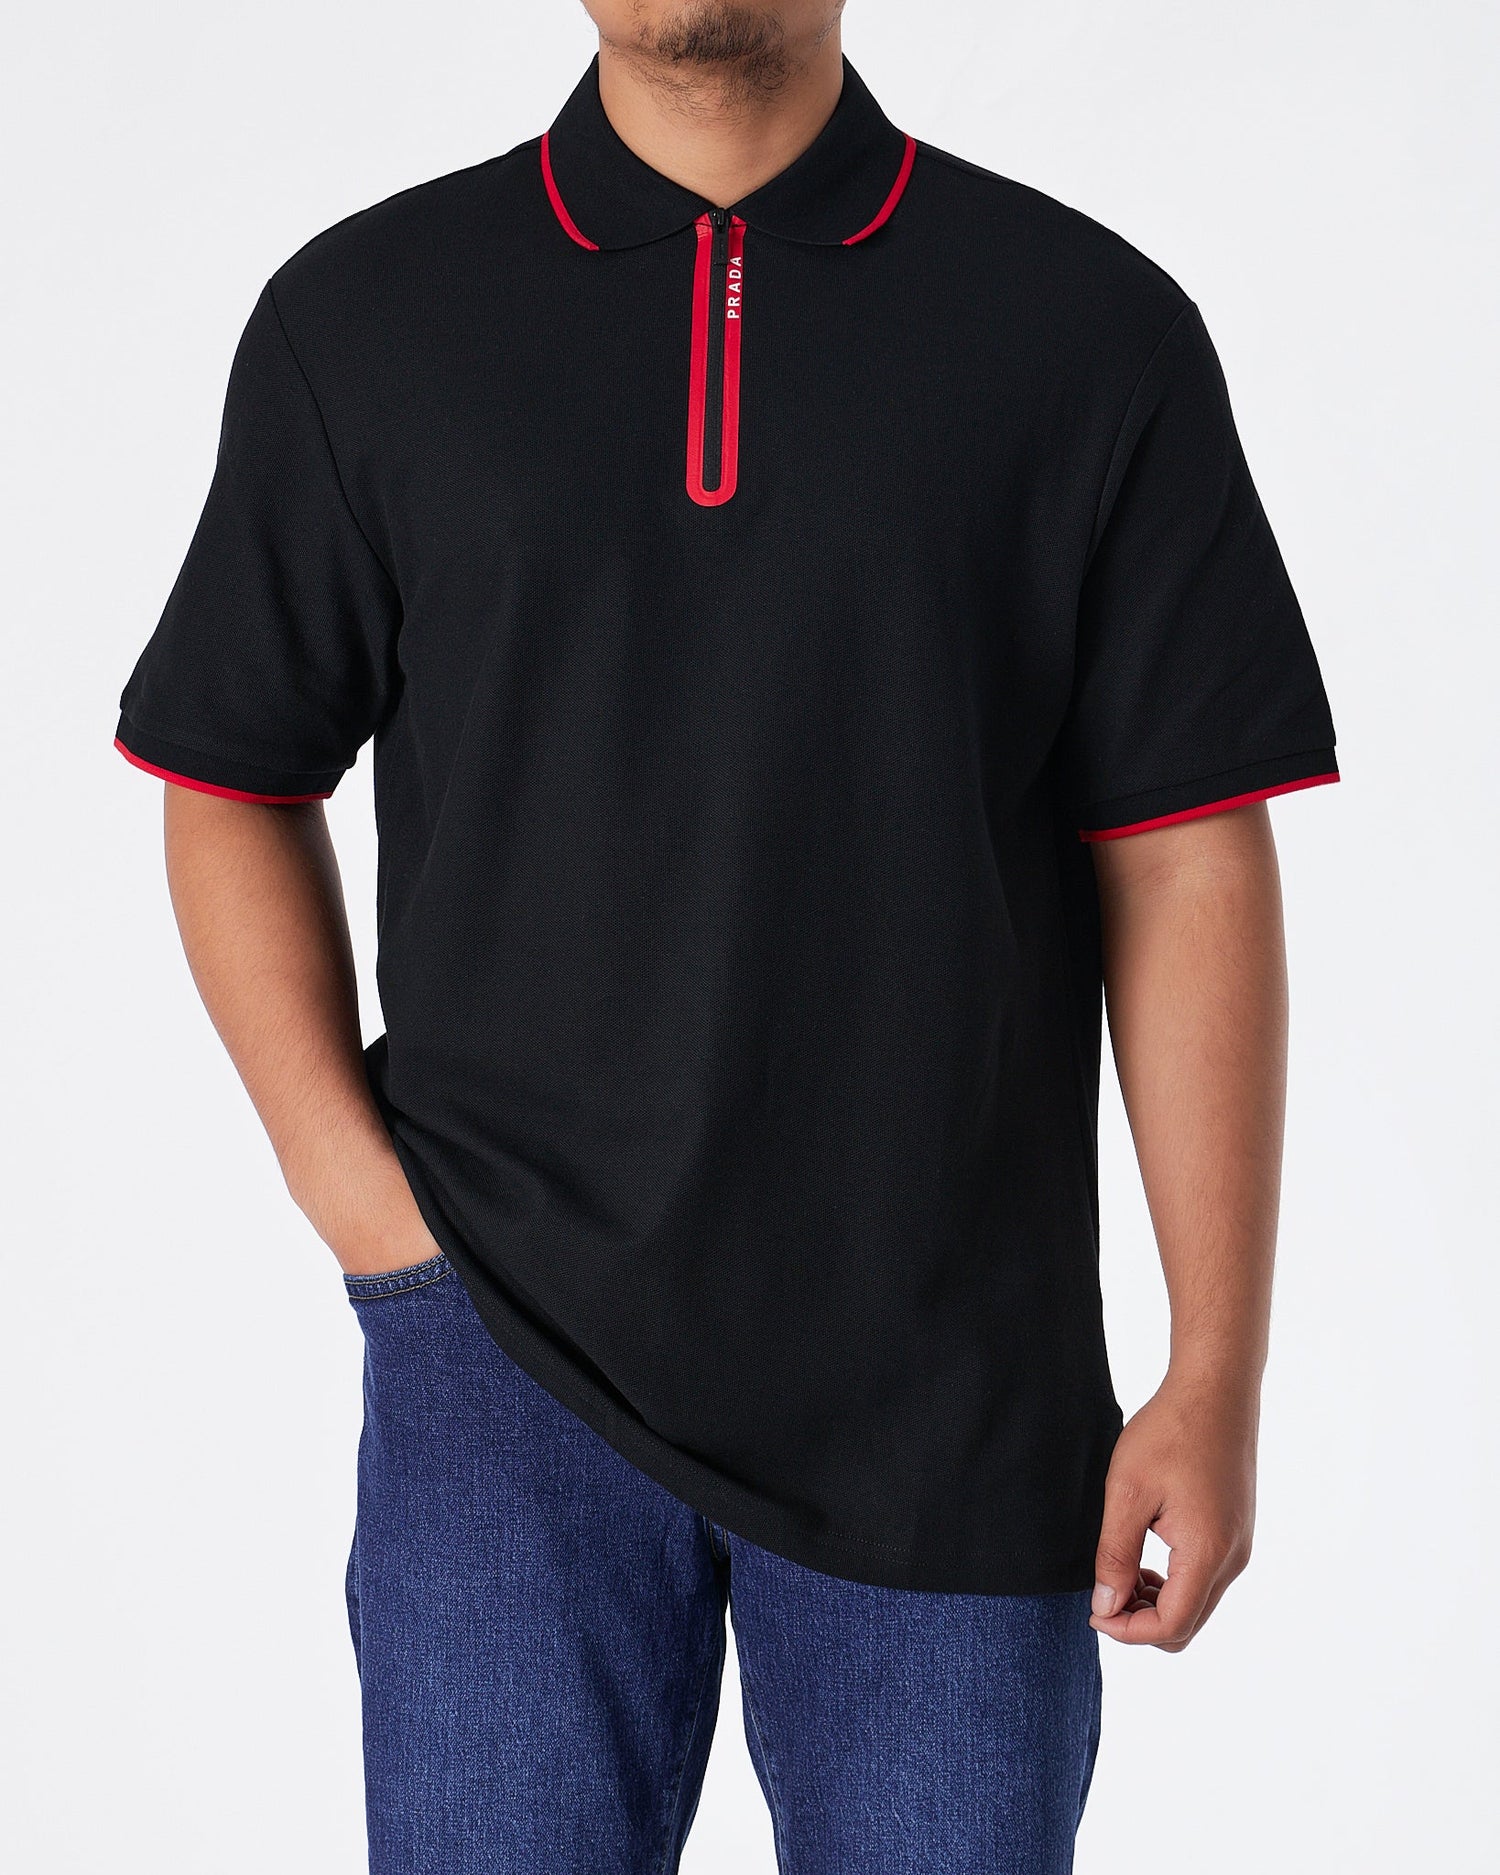 MOI OUTFIT-PRA Zip Collar Men Black Polo Shirt 62.90